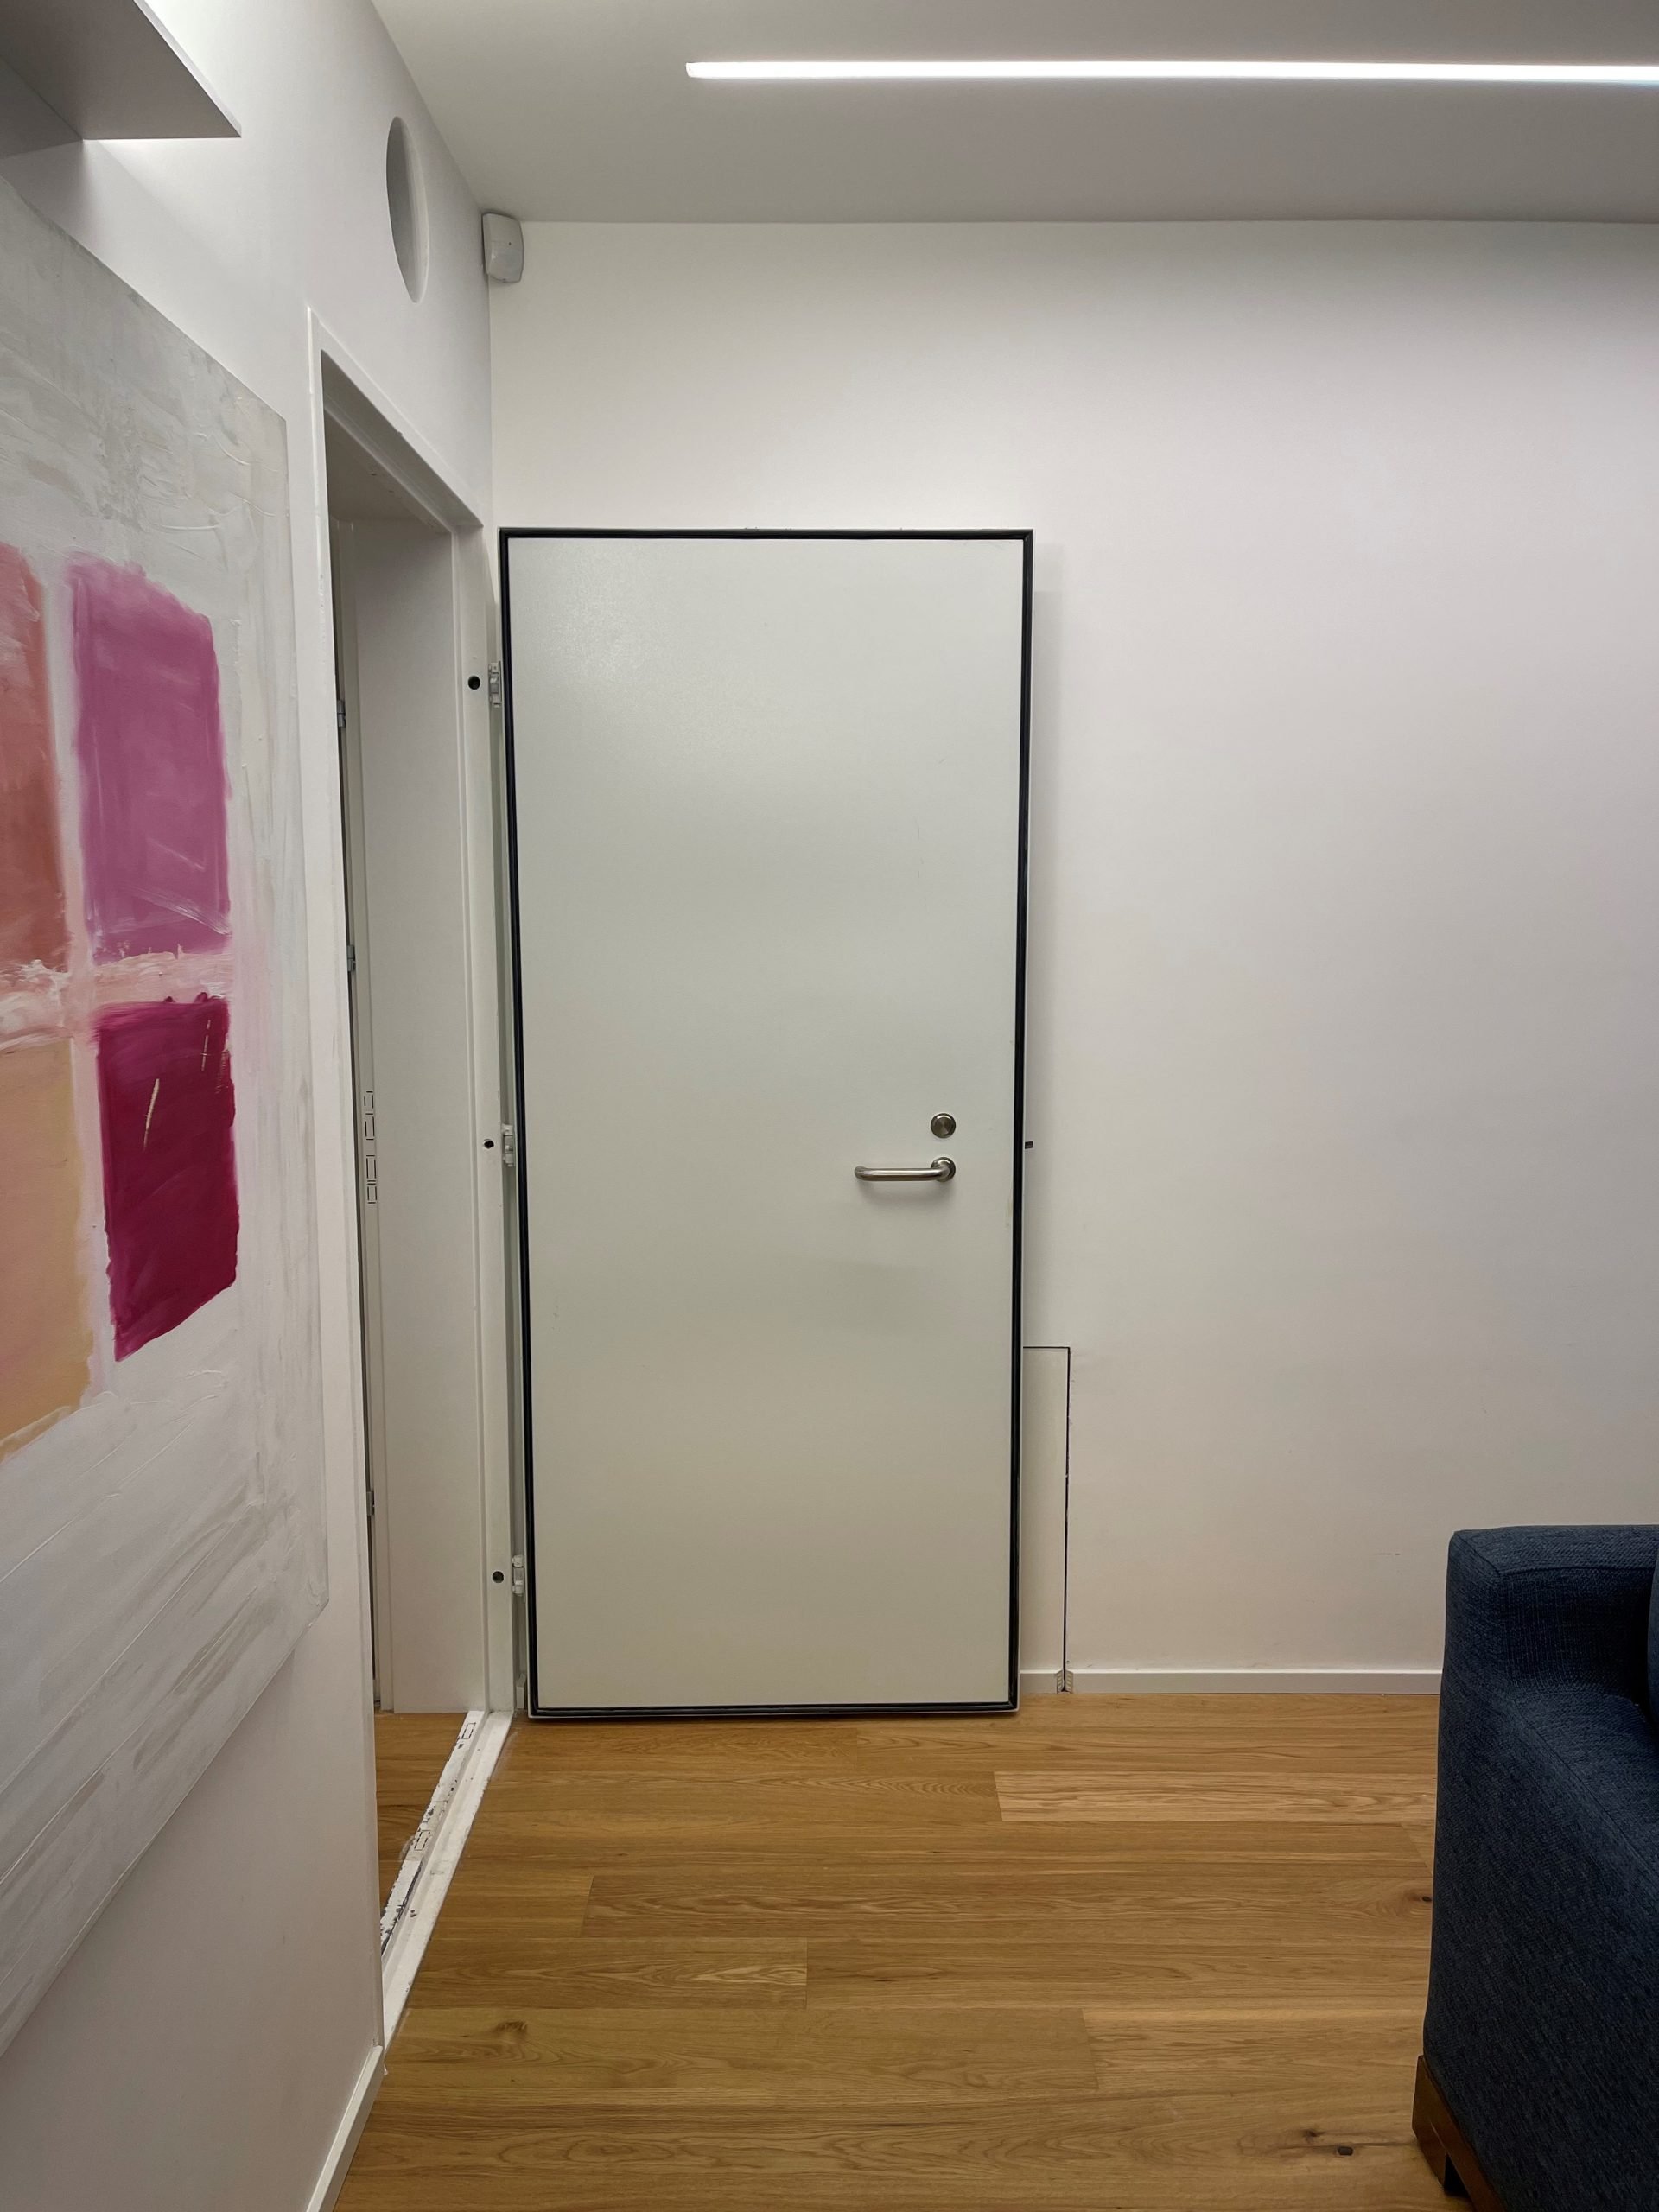 תמונה חיצונית של דלת ממד בצבע לבן של רב בריח